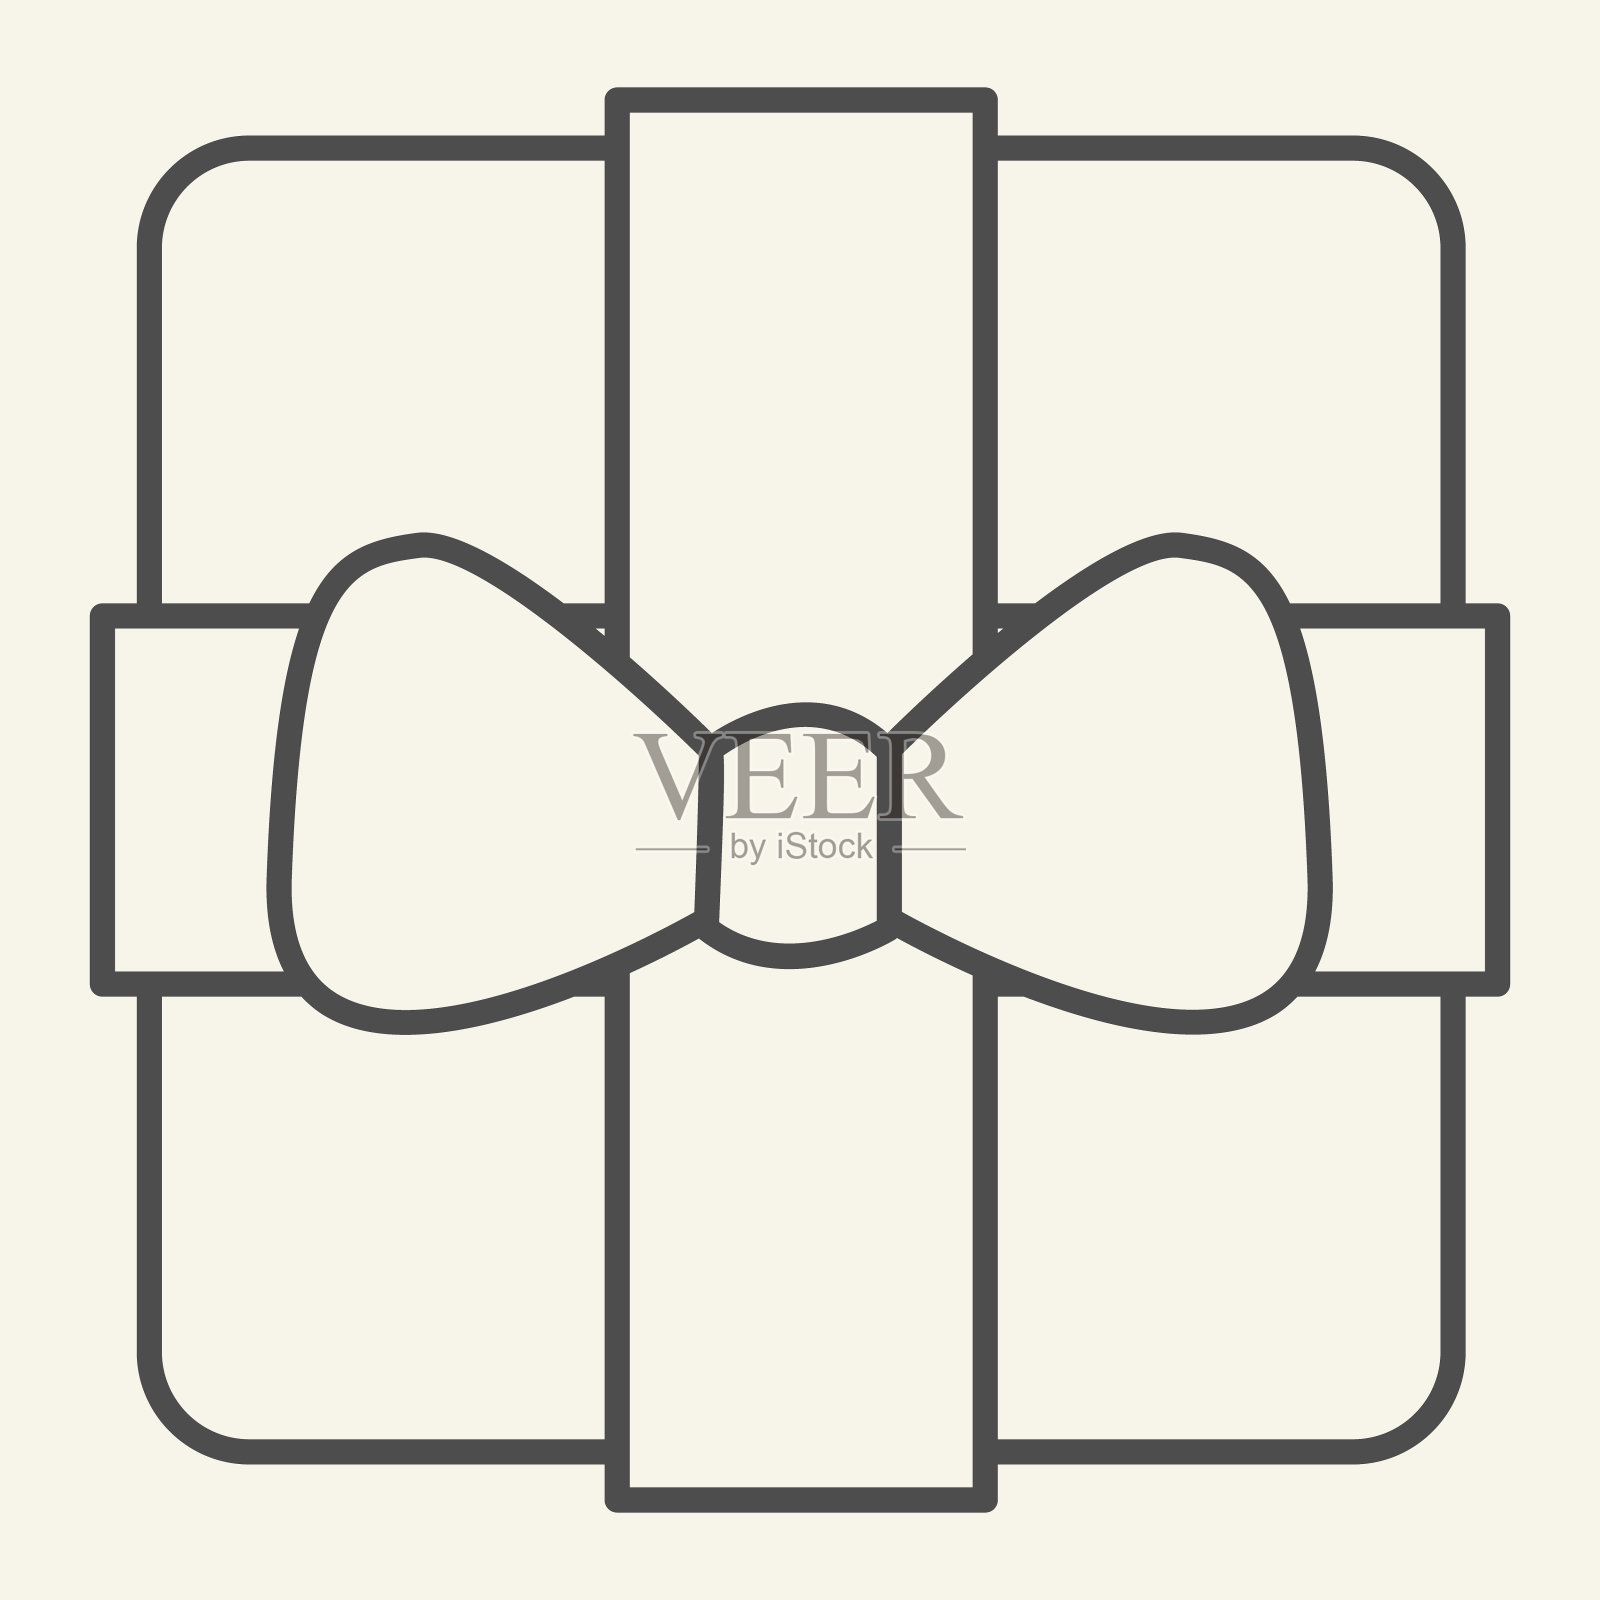 礼物细线图标。圣诞礼物盒与弓轮廓风格的象形文字在白色的背景。新年或圣诞节礼品盒的移动概念和网页设计。矢量图形。图标素材